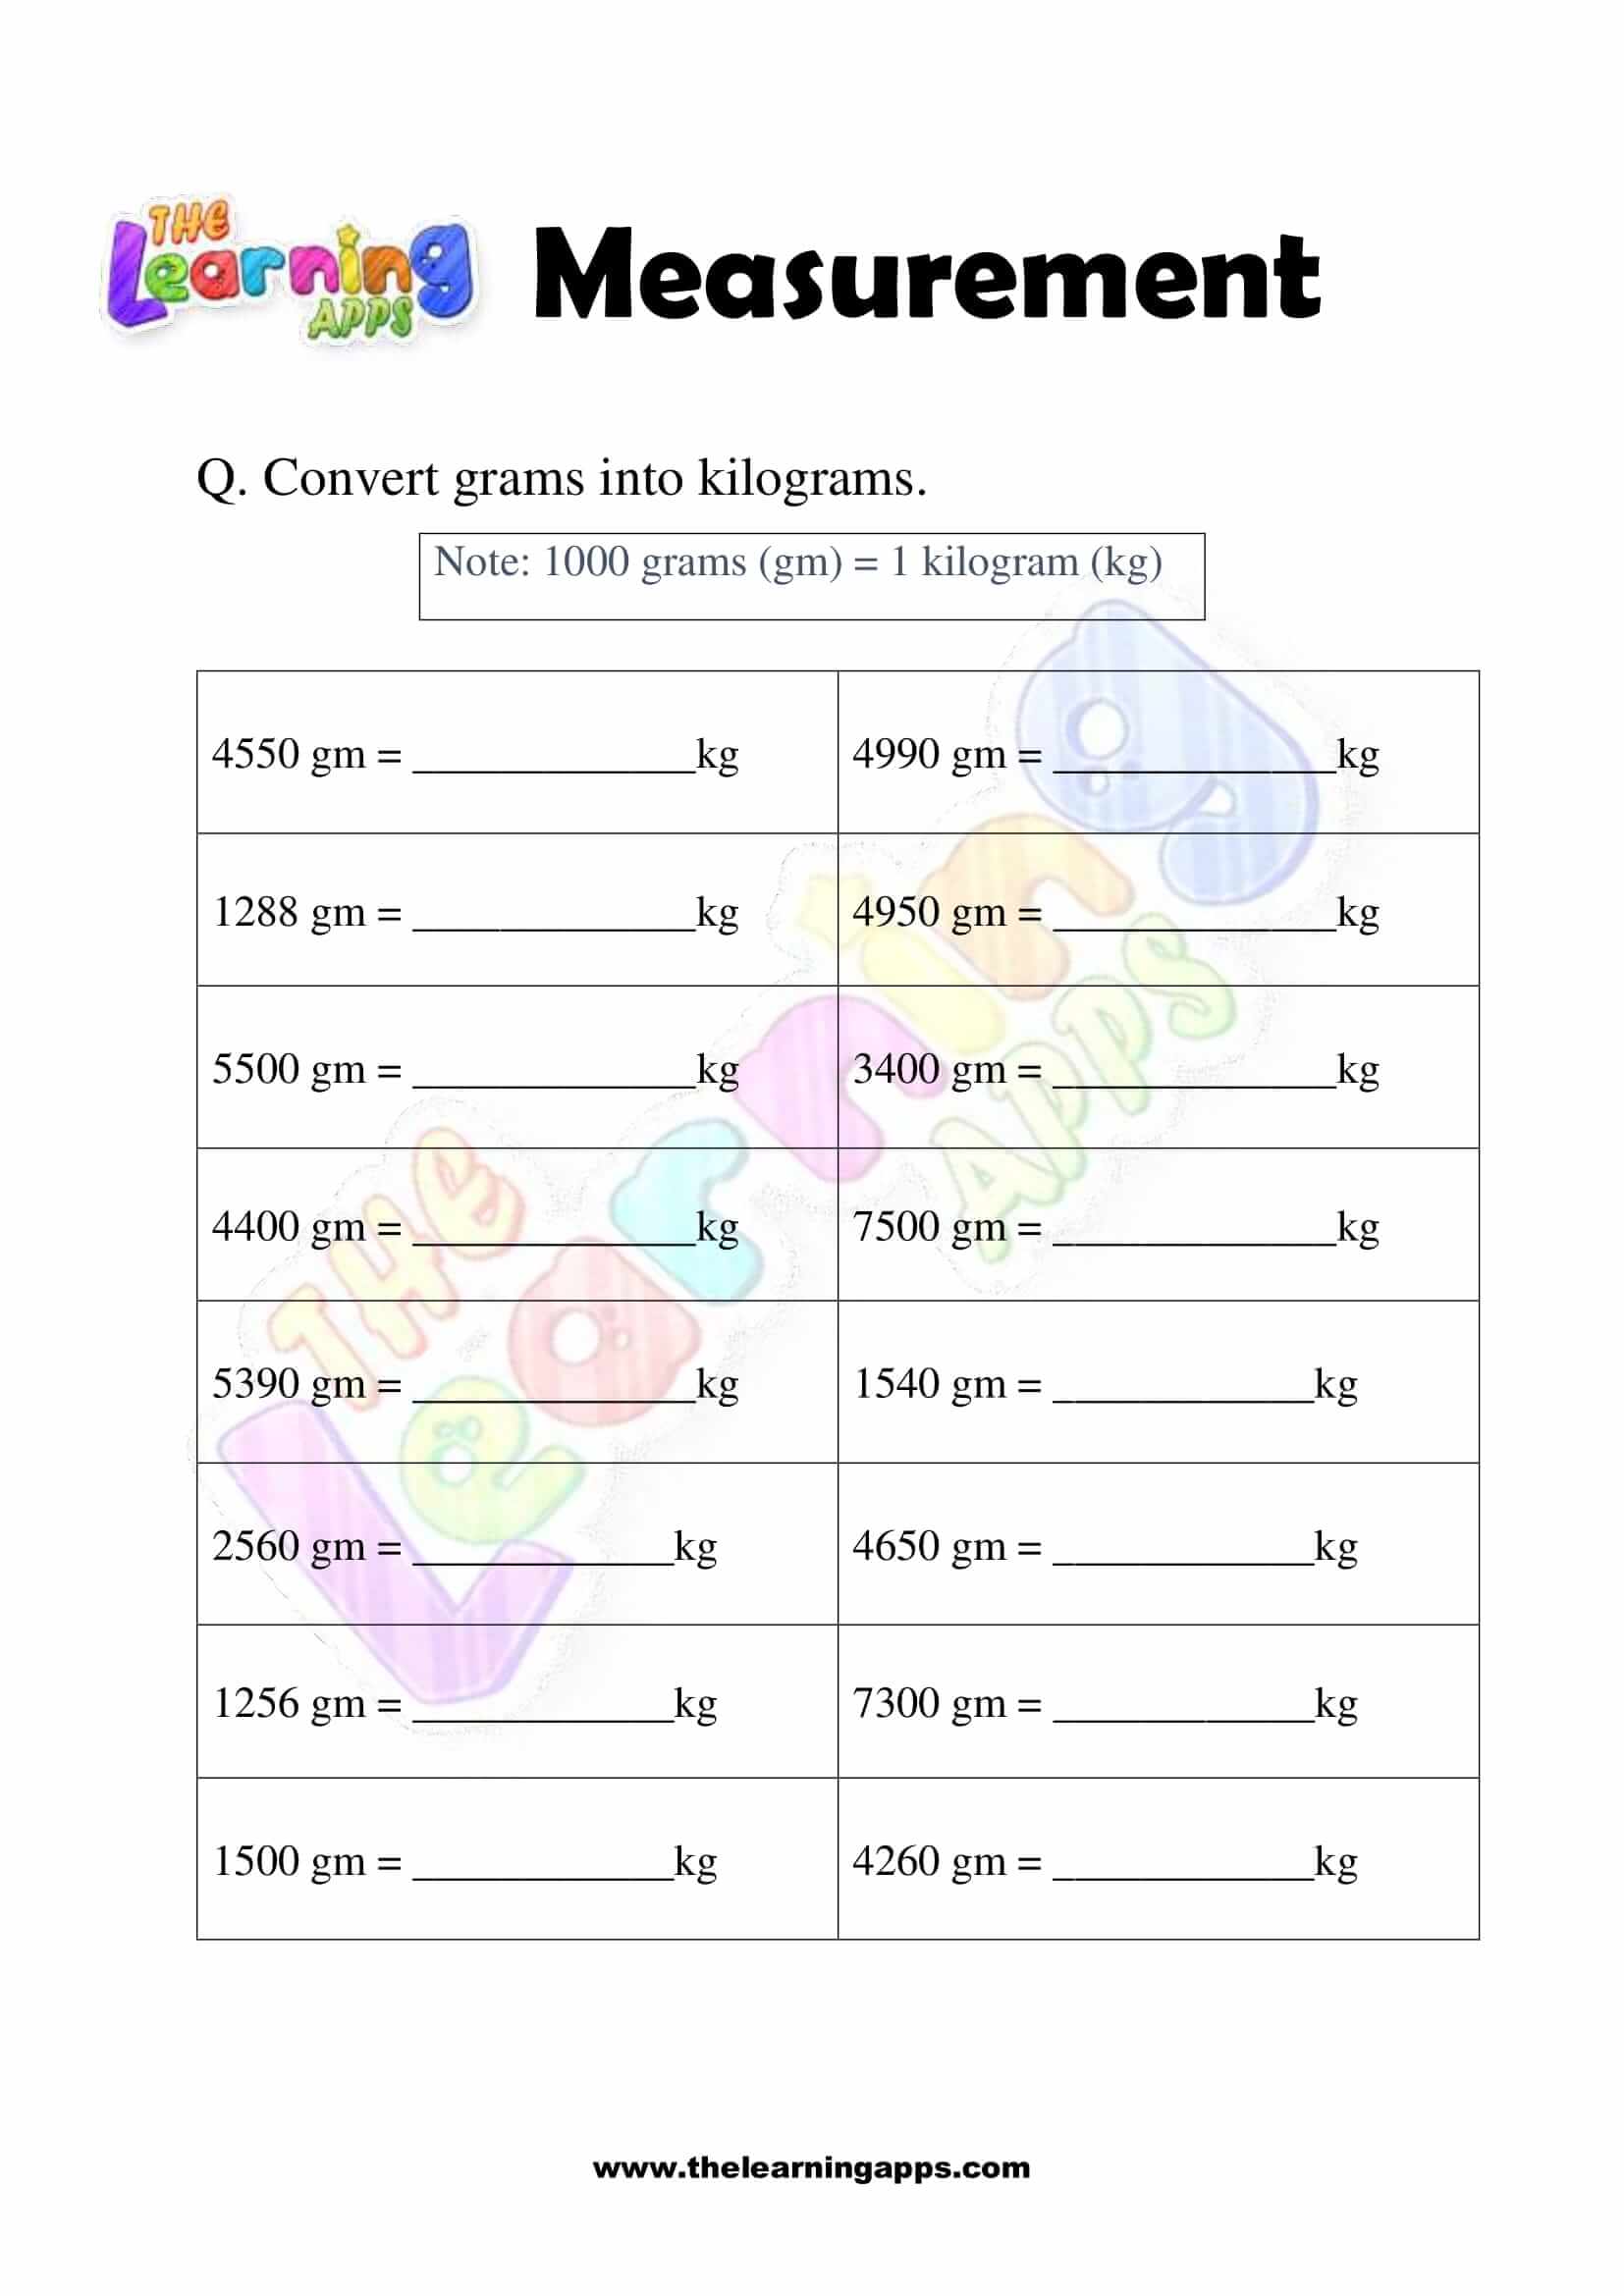 Measurement Worksheet - Grade 2 - Activity 1